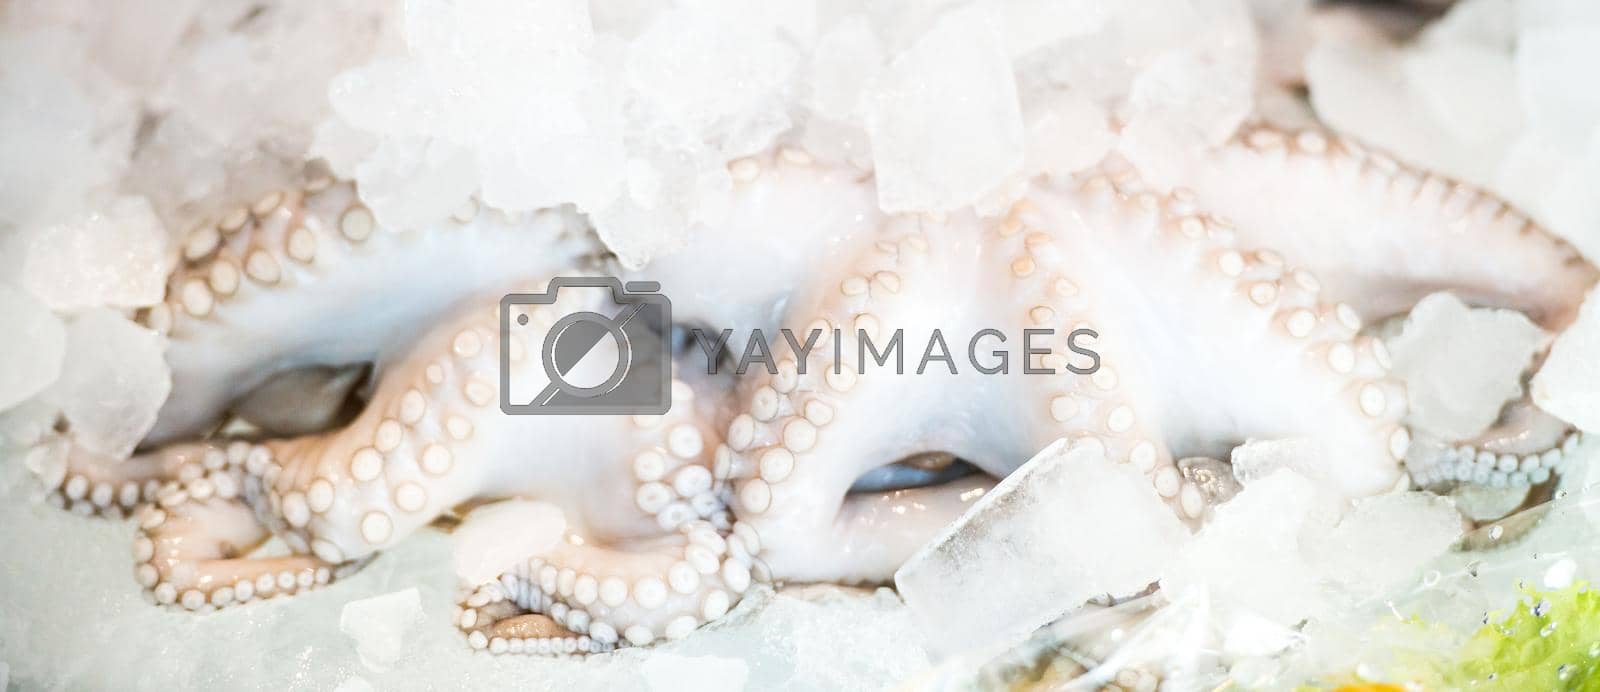 Royalty free image of fresh octopus on ice by GekaSkr